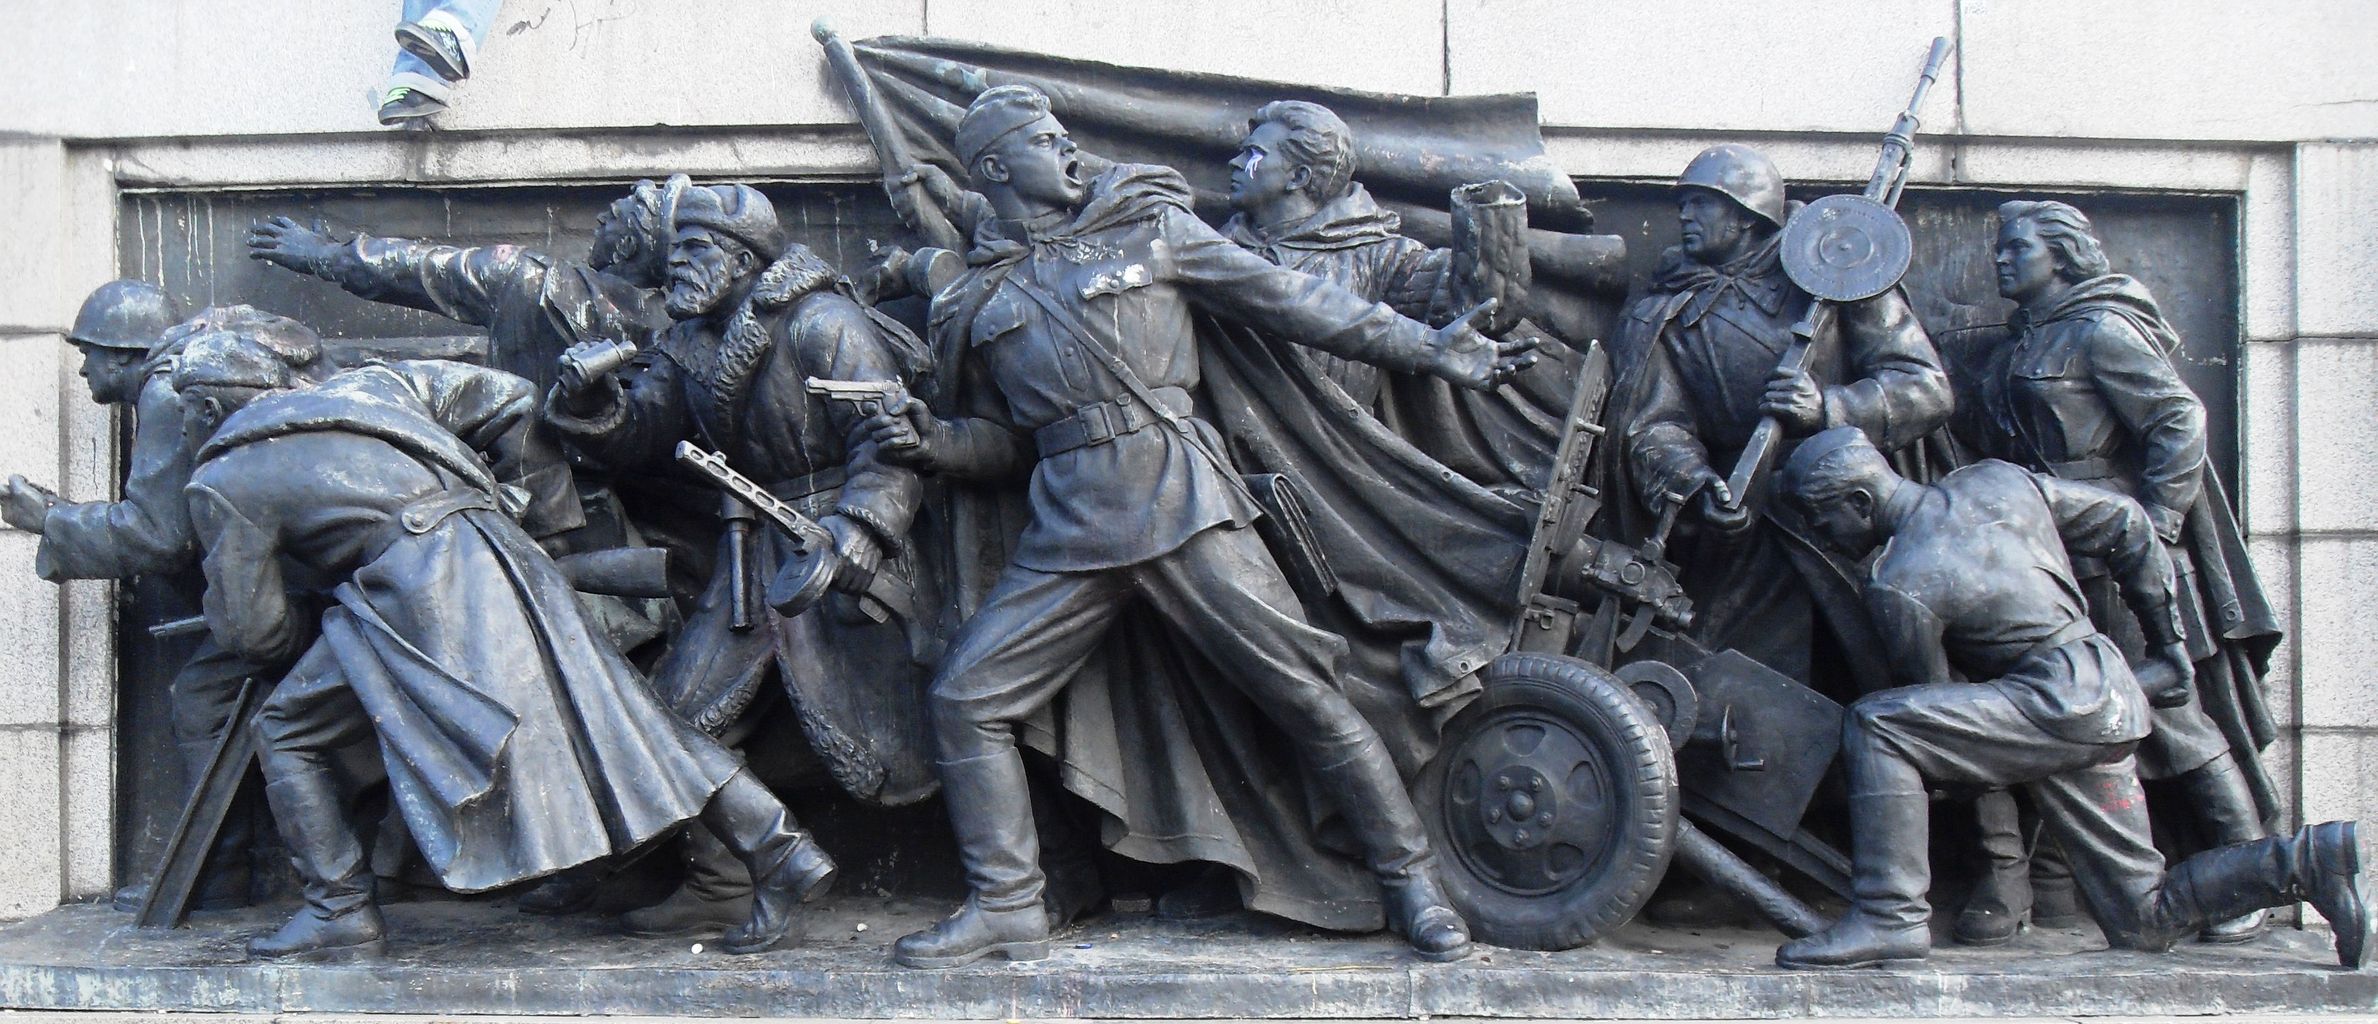 ウクライナ情勢 ソ連兵士の銅像が ウクライナ国旗に塗り替えられる 海外の反応 これが世界の選択か 01